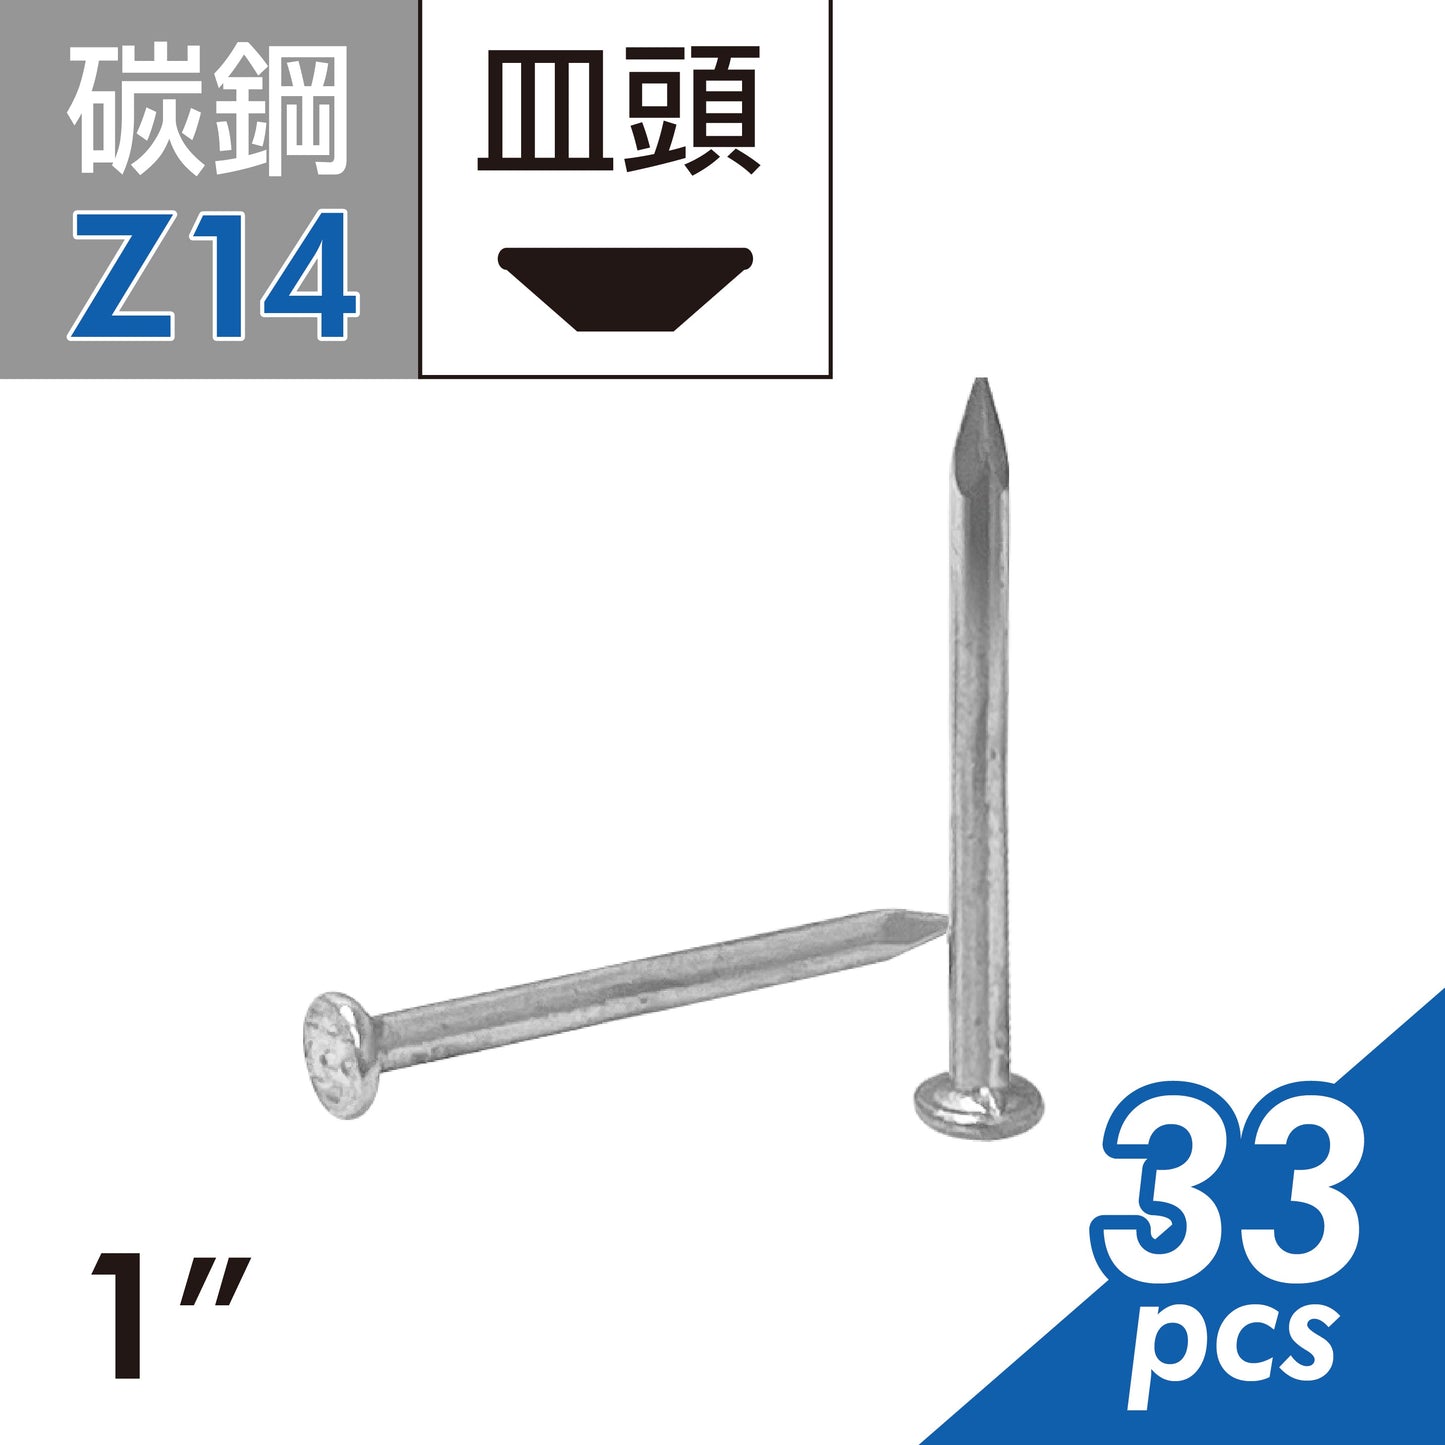 鐵釘 洋釘 木工釘子 建筑鐵釘 園釘 釘子 台灣製造 (E02D-Z14)